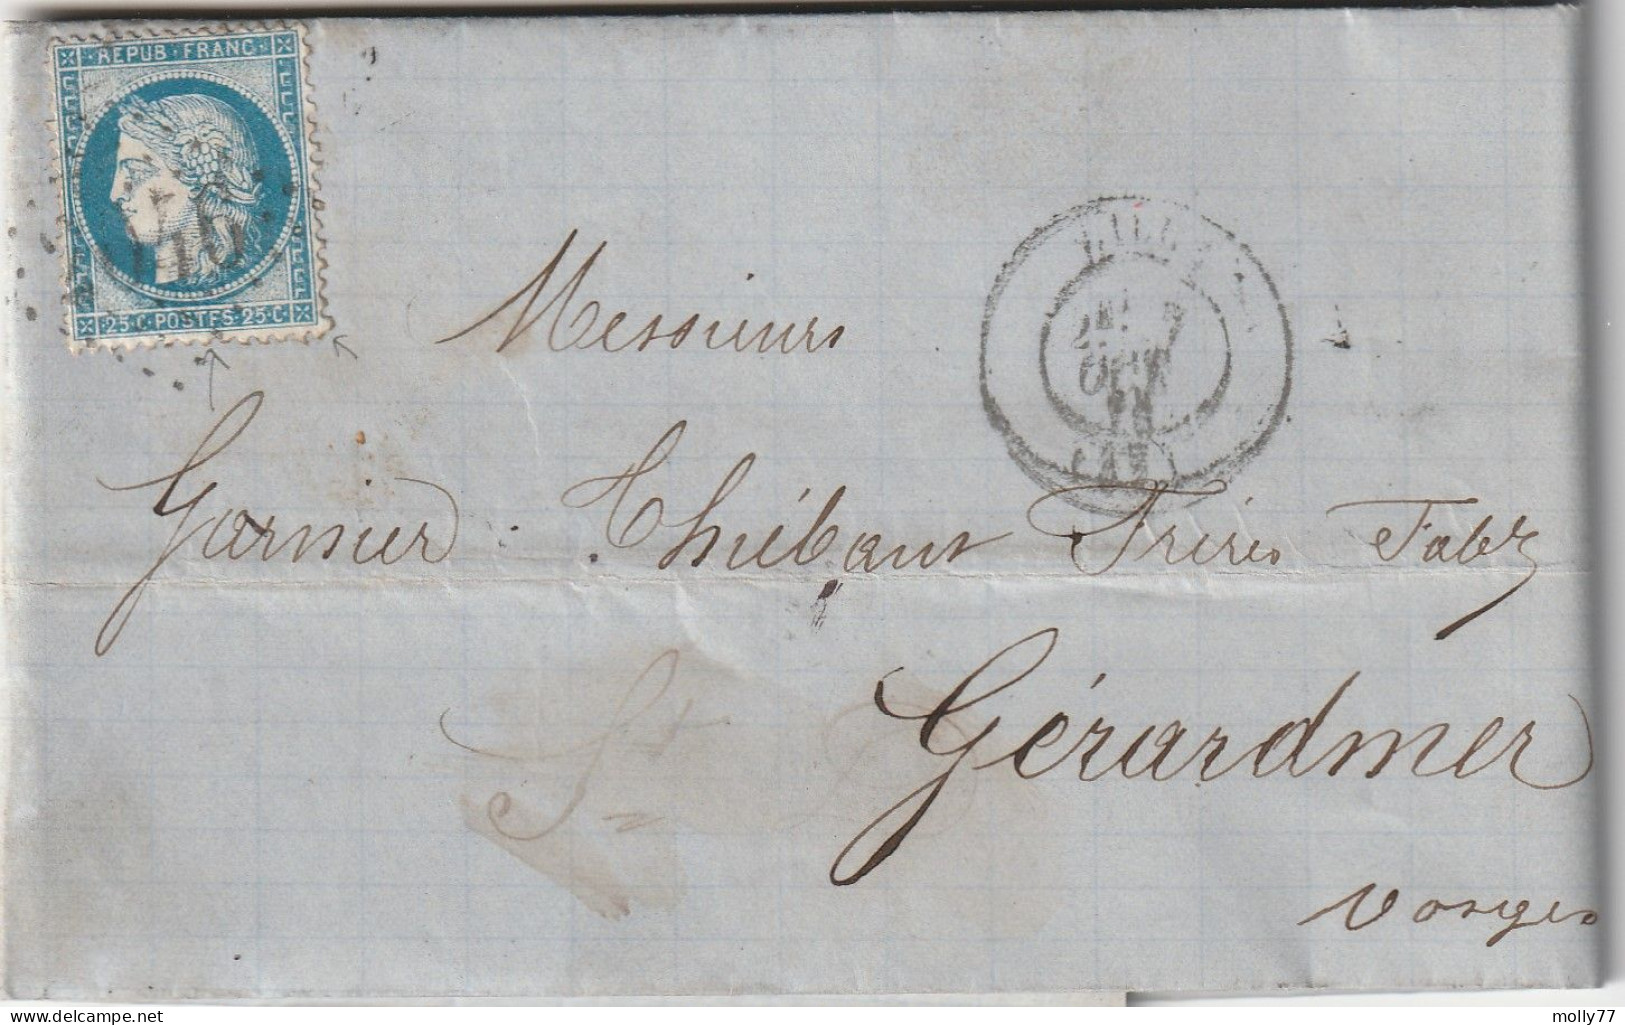 Lettre De Lille à Gérardmer LAC - 1849-1876: Classic Period